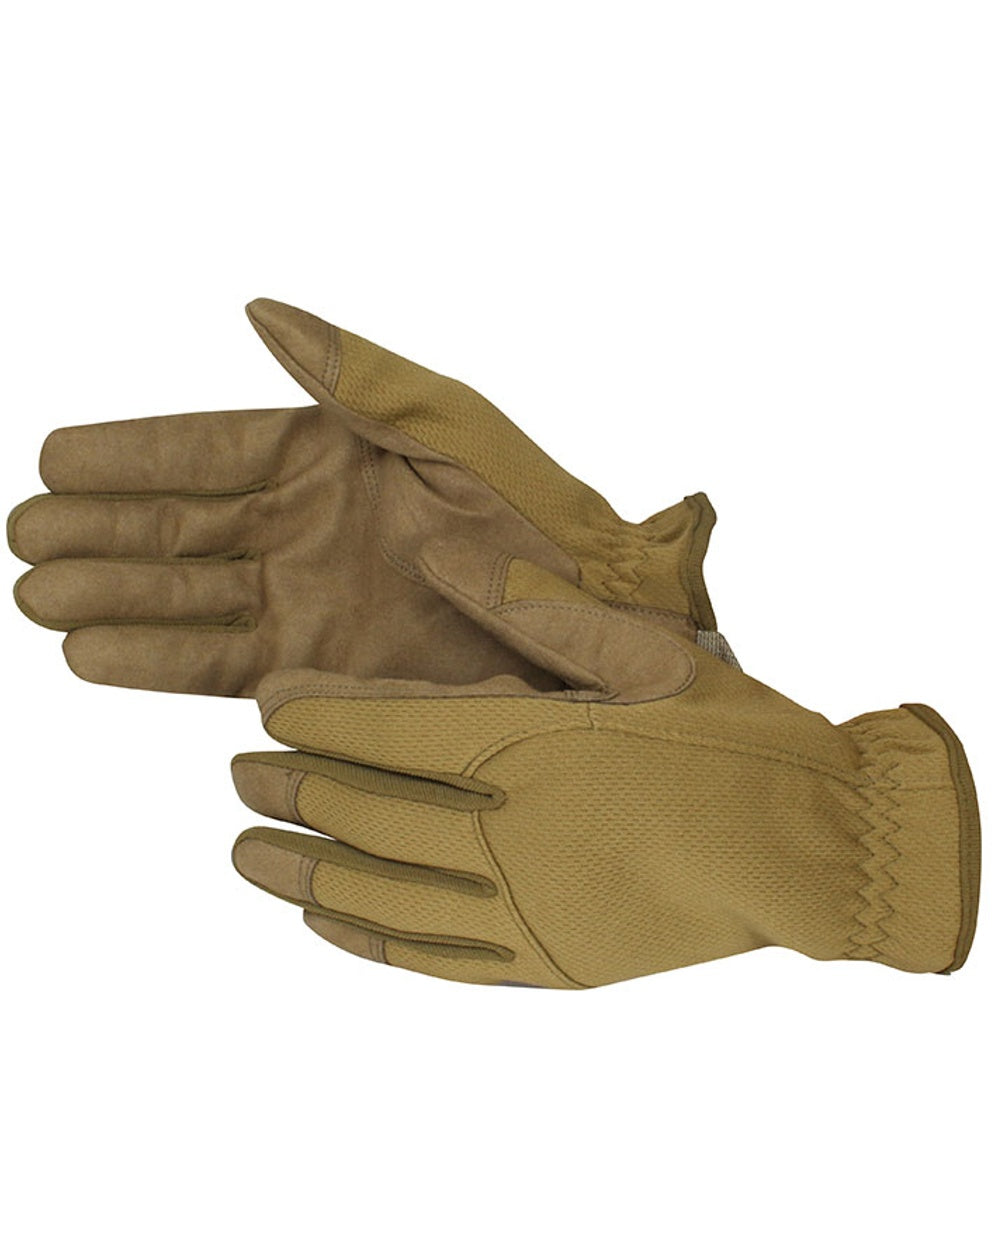 Viper Patrol Gloves in Coyote 